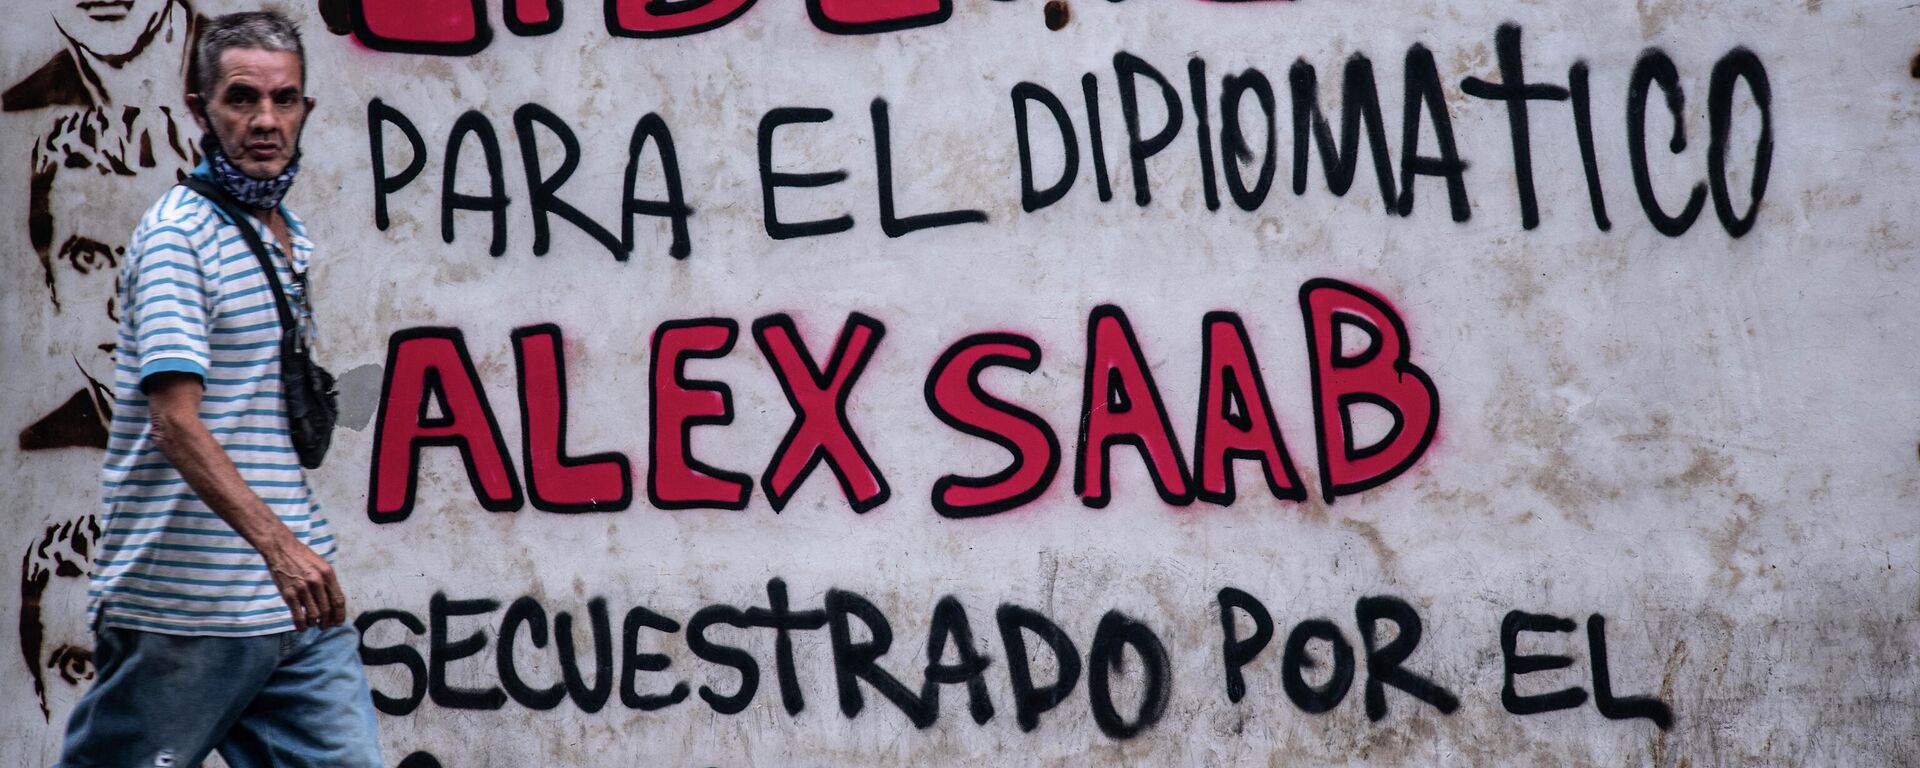 Un grafiti en Caracas en reclamo por la libertad de Alex Saab, detenido en Cabo Verde - Sputnik Mundo, 1920, 07.09.2021